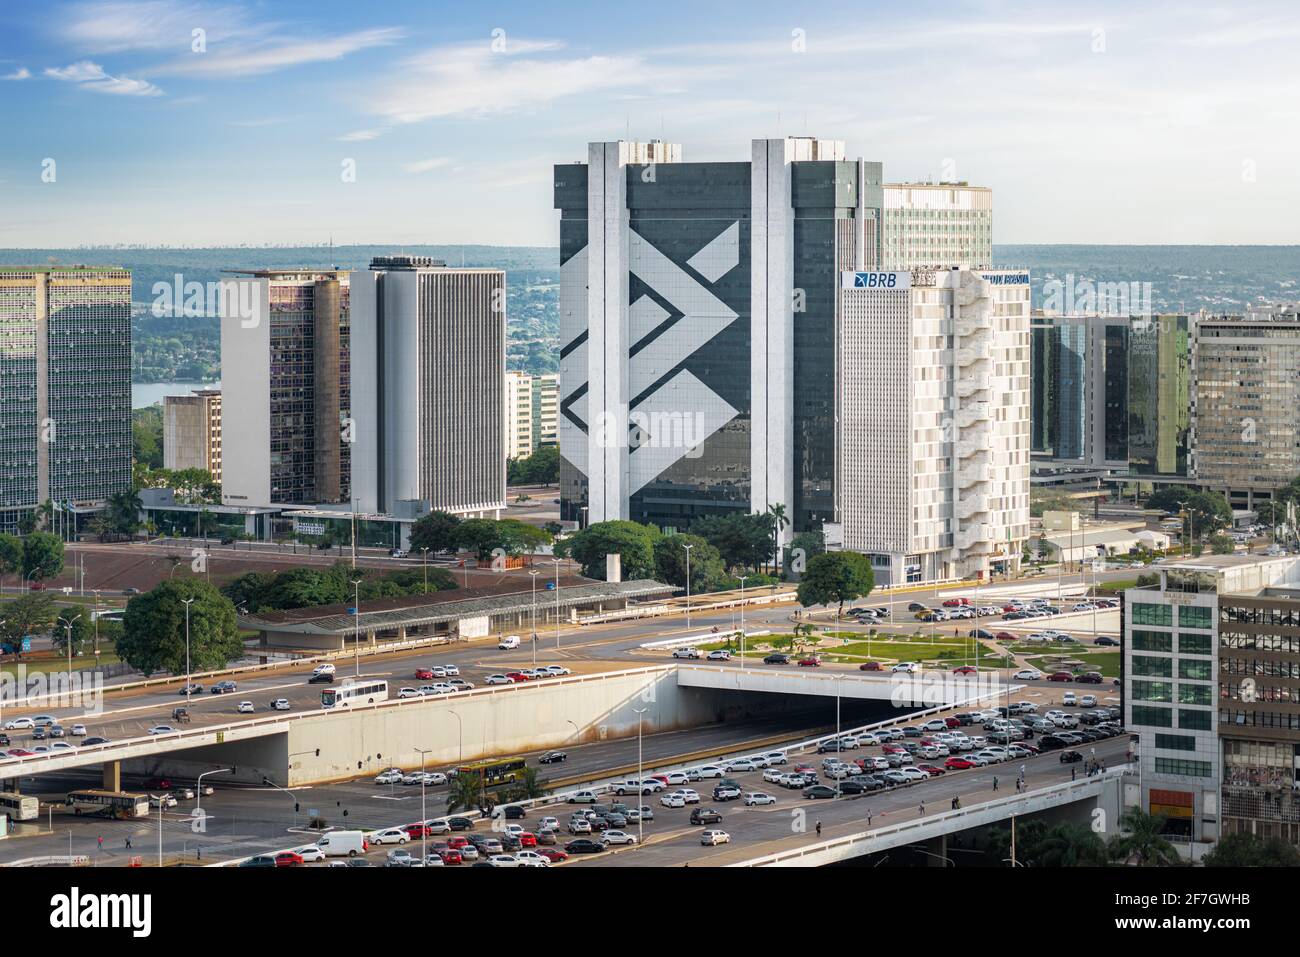 Vue aérienne du bâtiment du siège de Brasilia et de Banco do Brasil et du secteur bancaire du Sud - Brasilia, Distrito Feder Banque D'Images